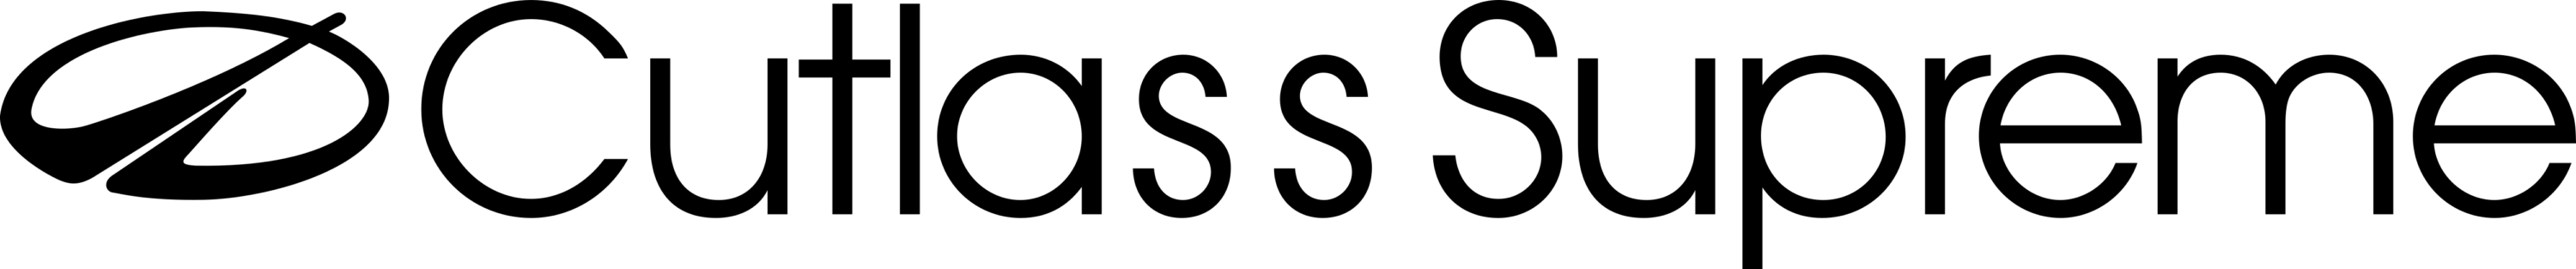 Cutlass Supreme Logo